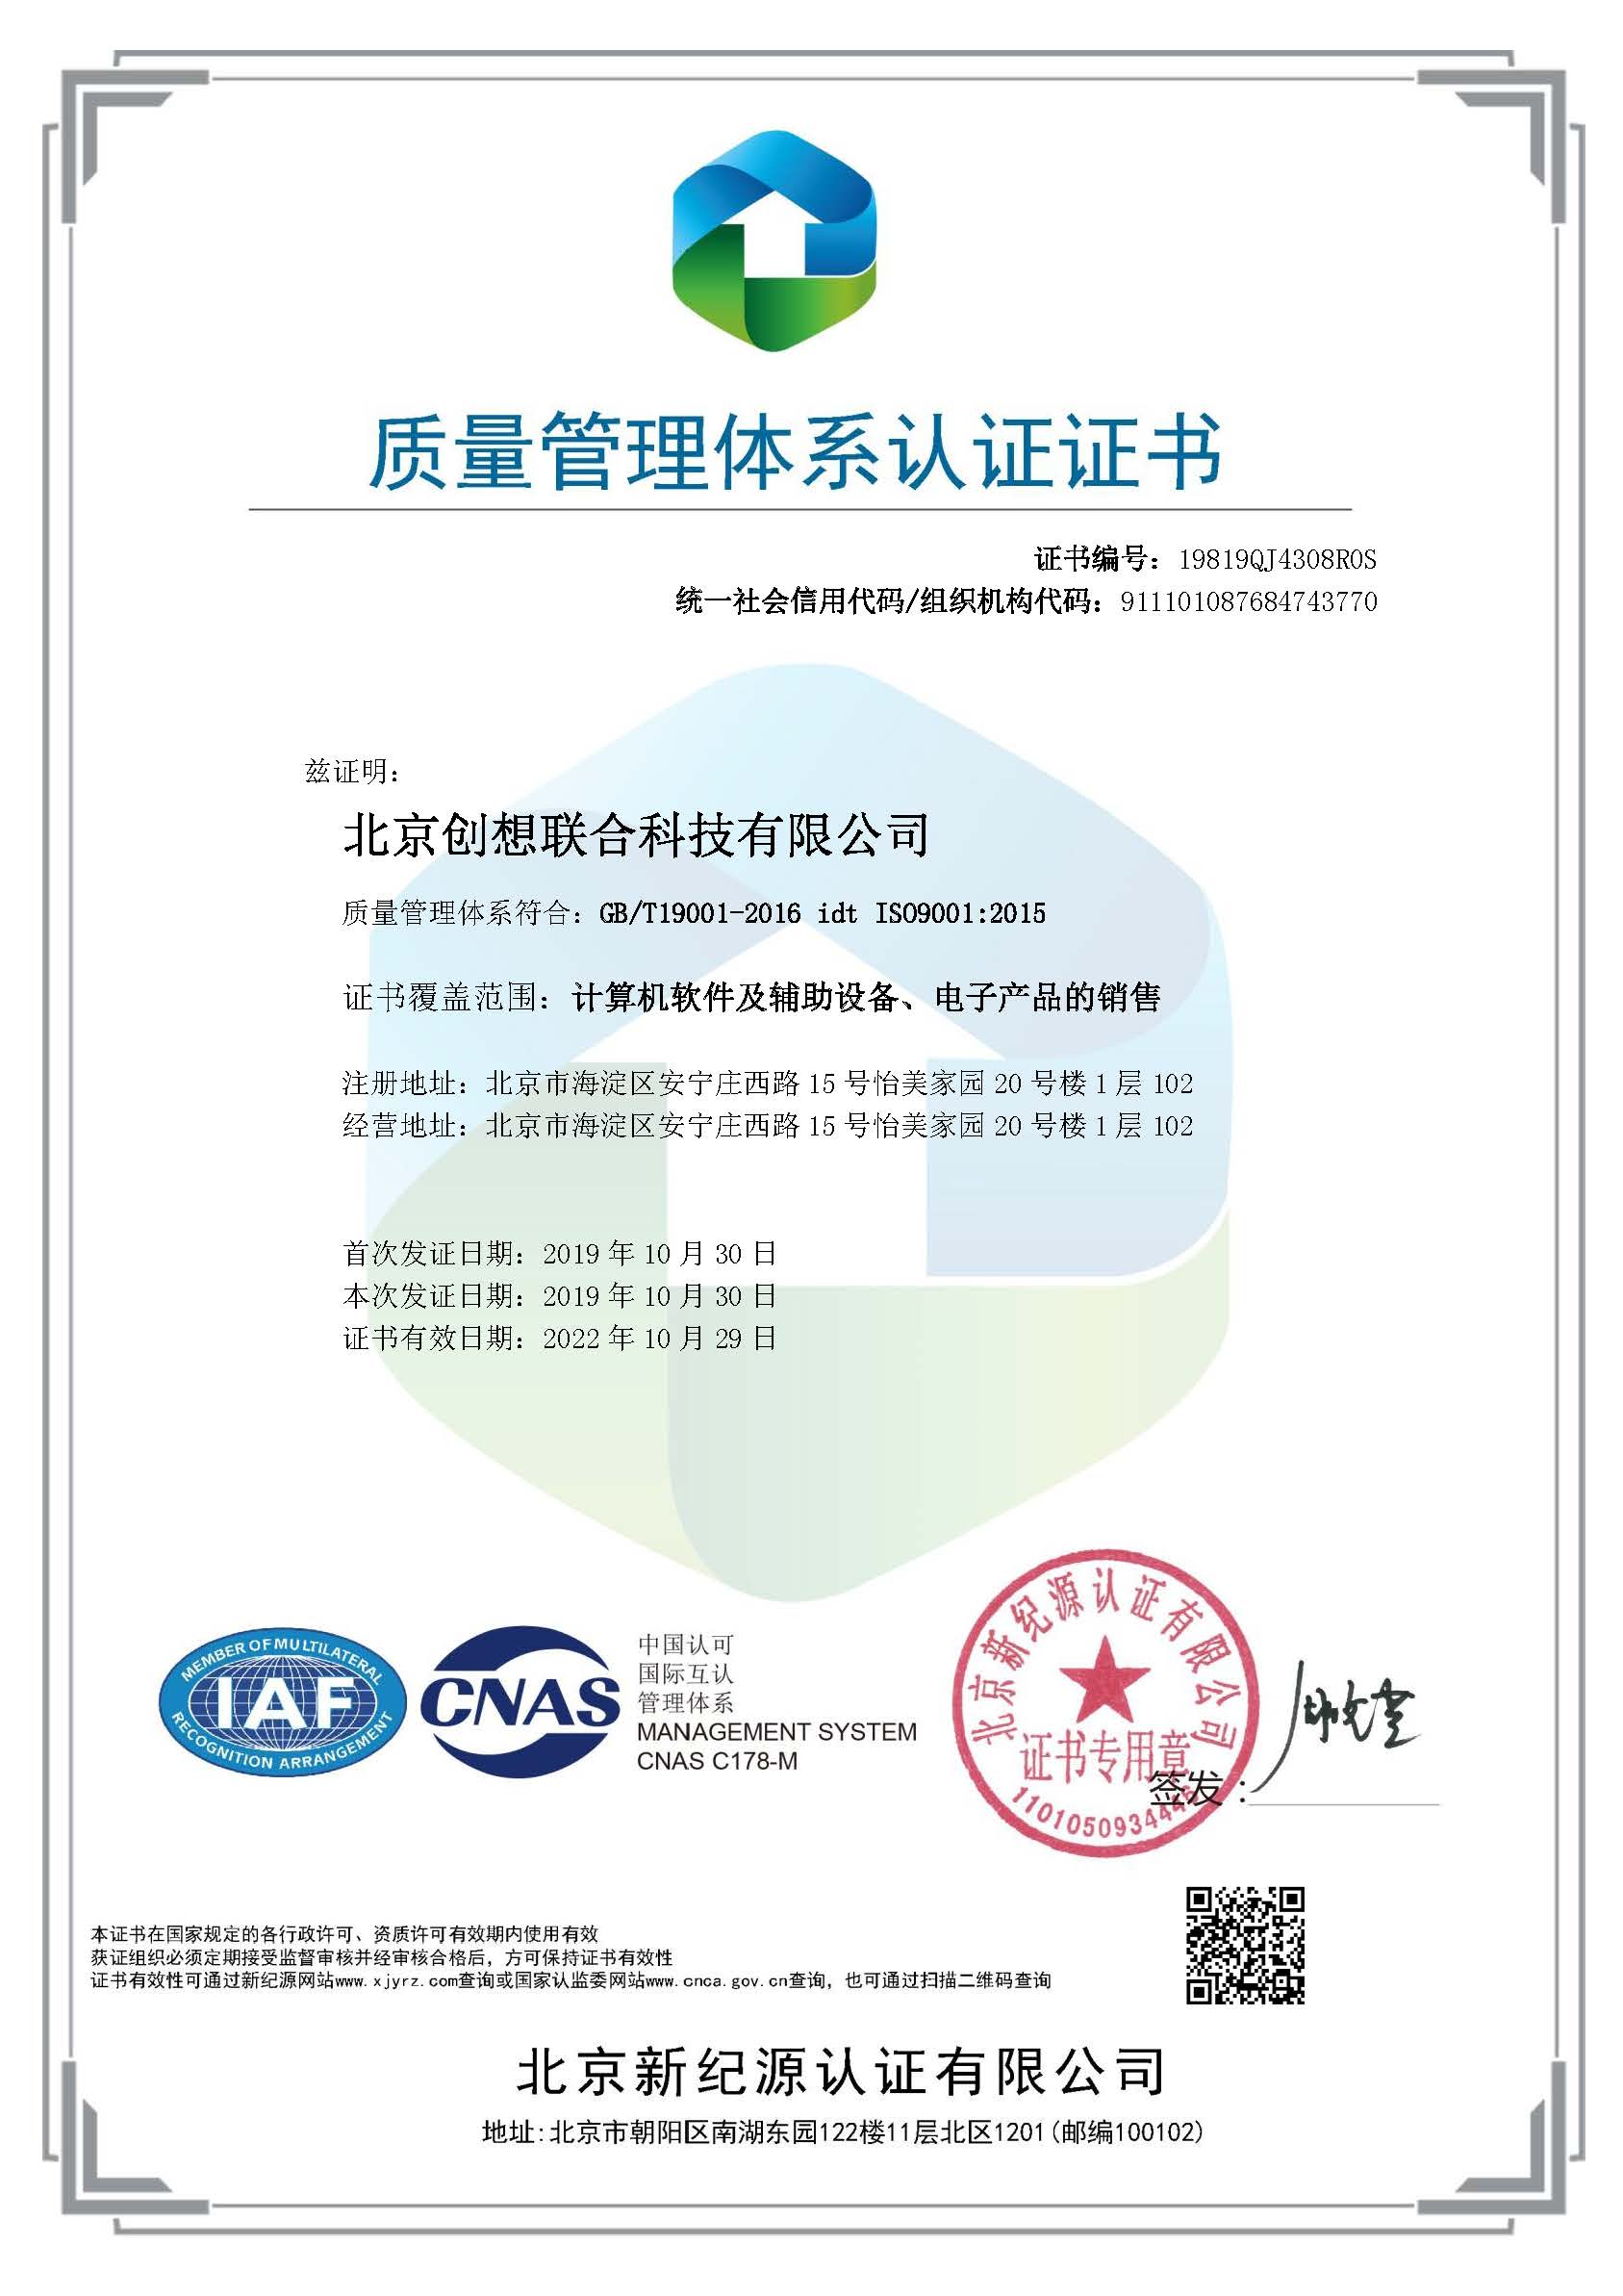 北京创想联合科技有限公司-QMS-中文证书